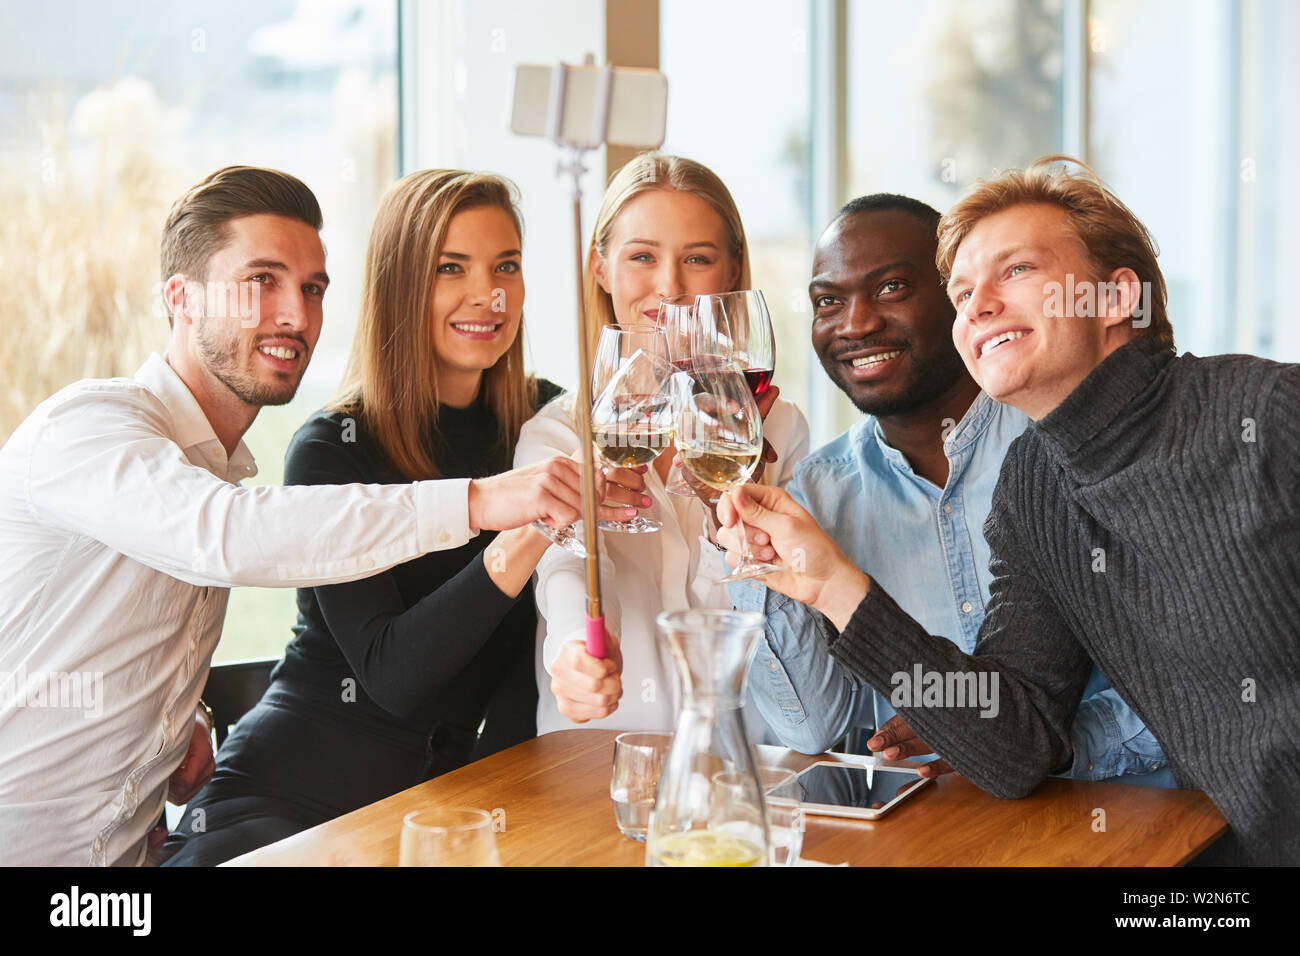 Les jeunes dans le restaurant toast avec du vin et de prendre un des selfies Banque D'Images